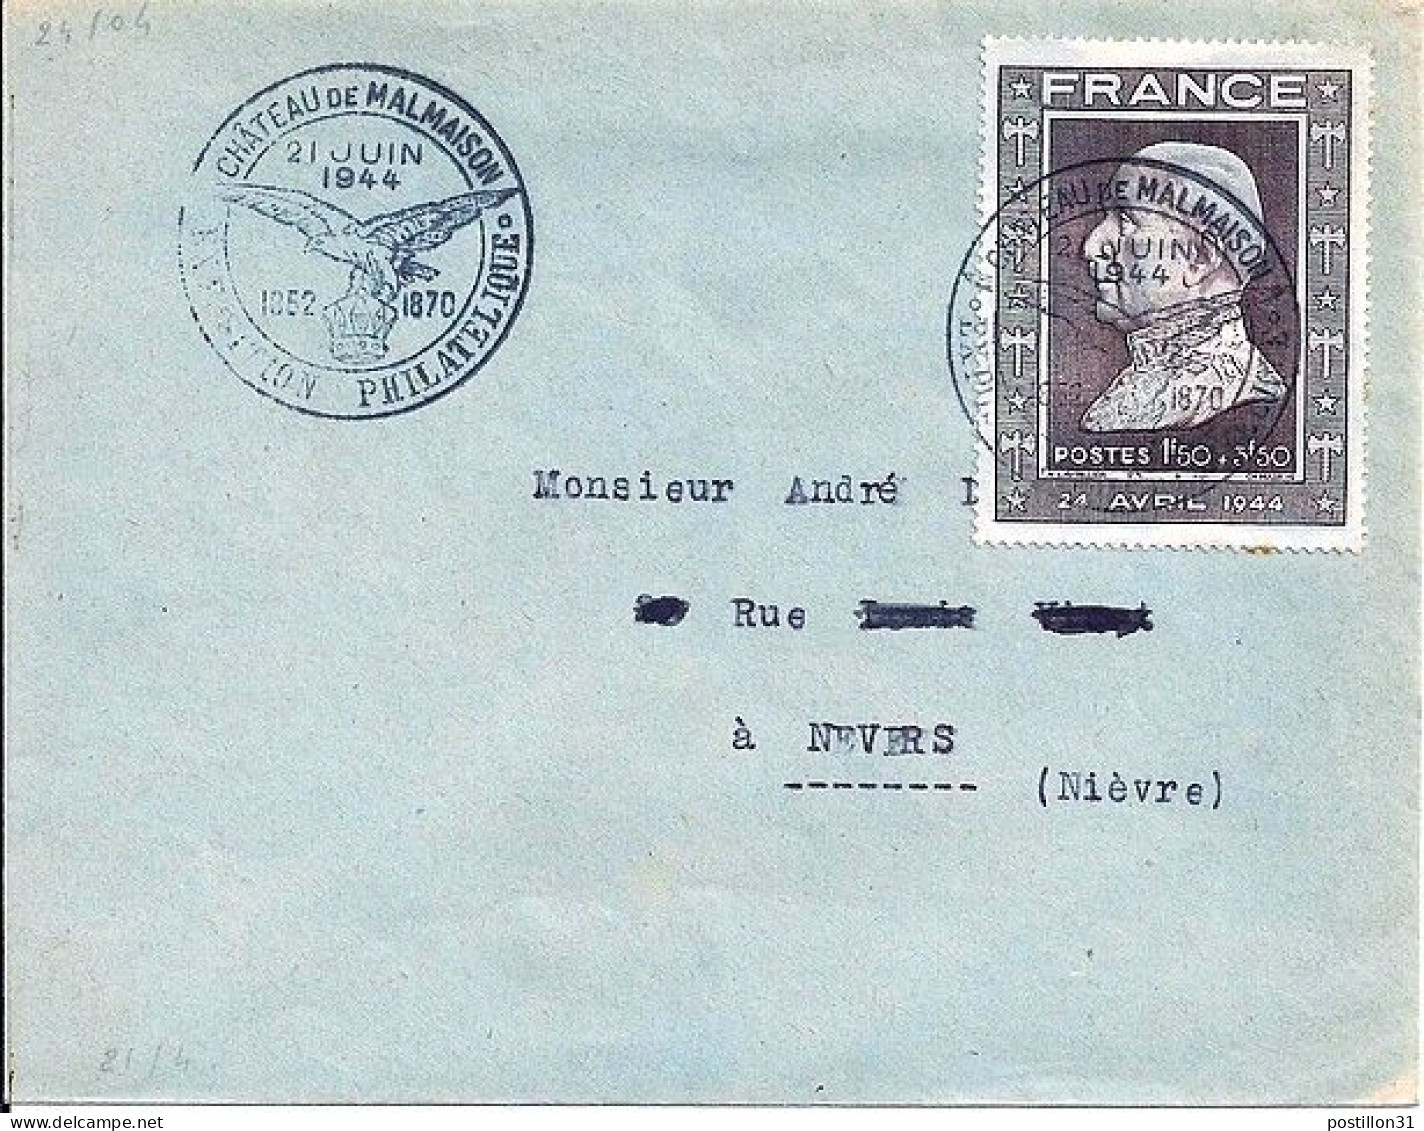 FRANCE N° 606 S/L. DE MALMAISON/21.6.44 - Lettres & Documents